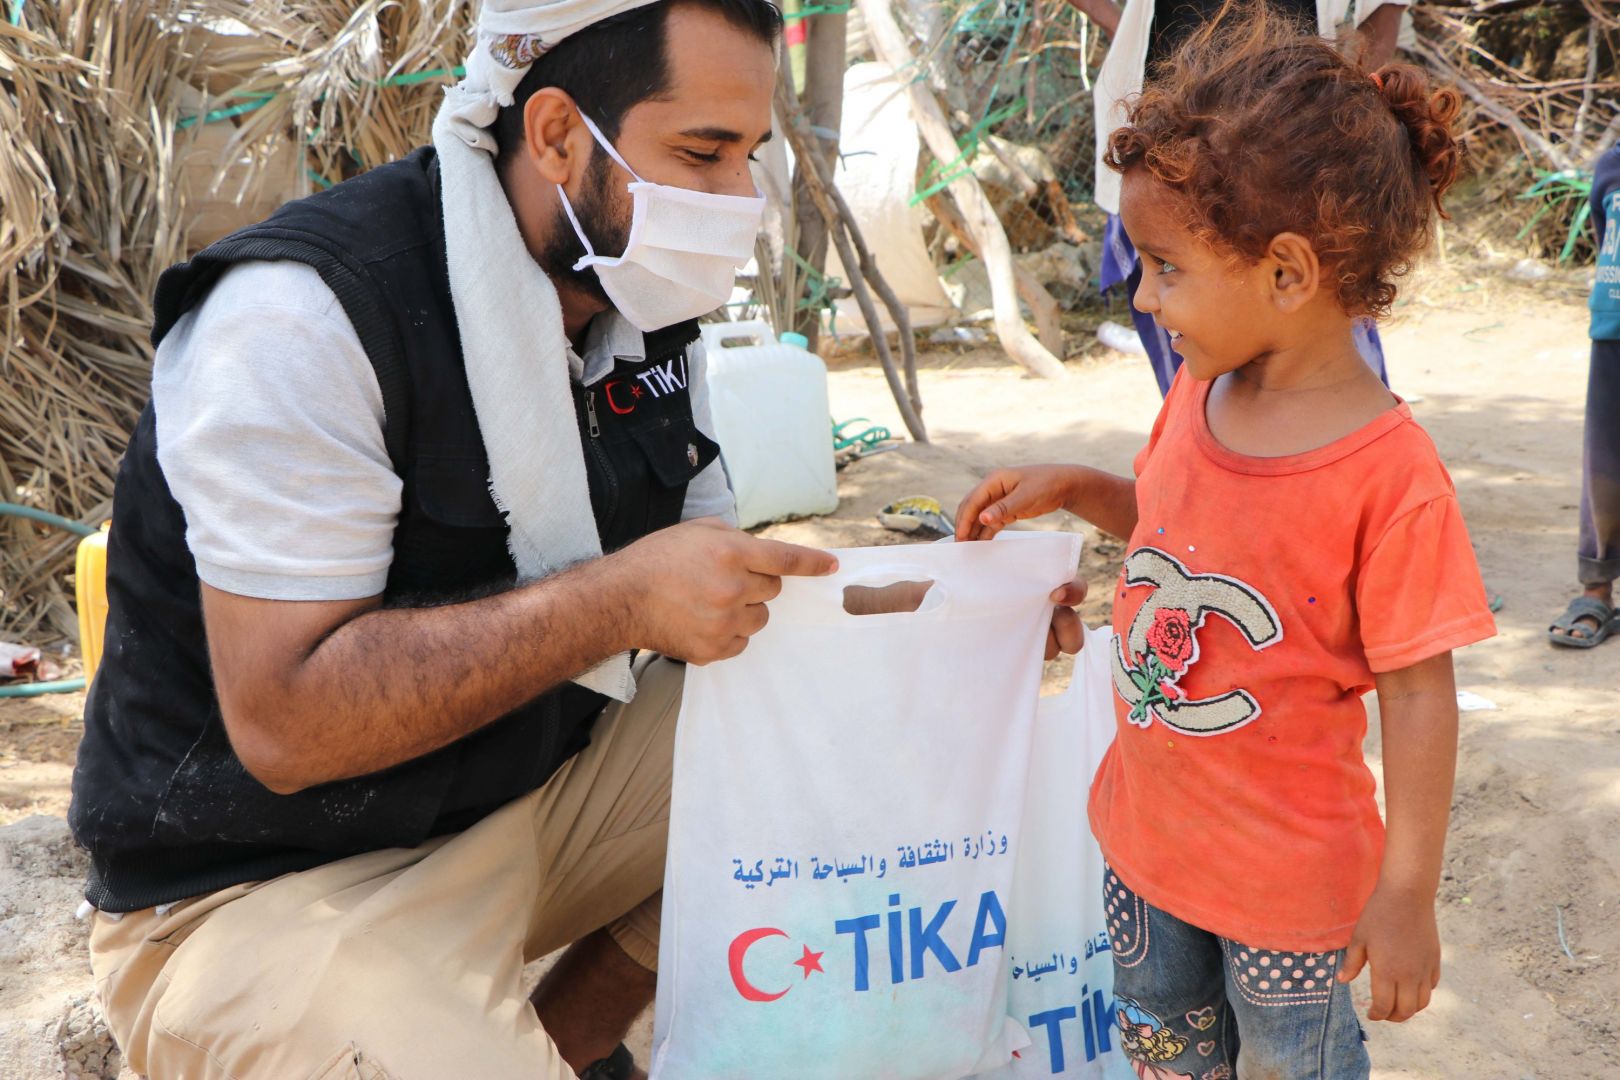 Turkiye provides humanitarian aid for Yemen